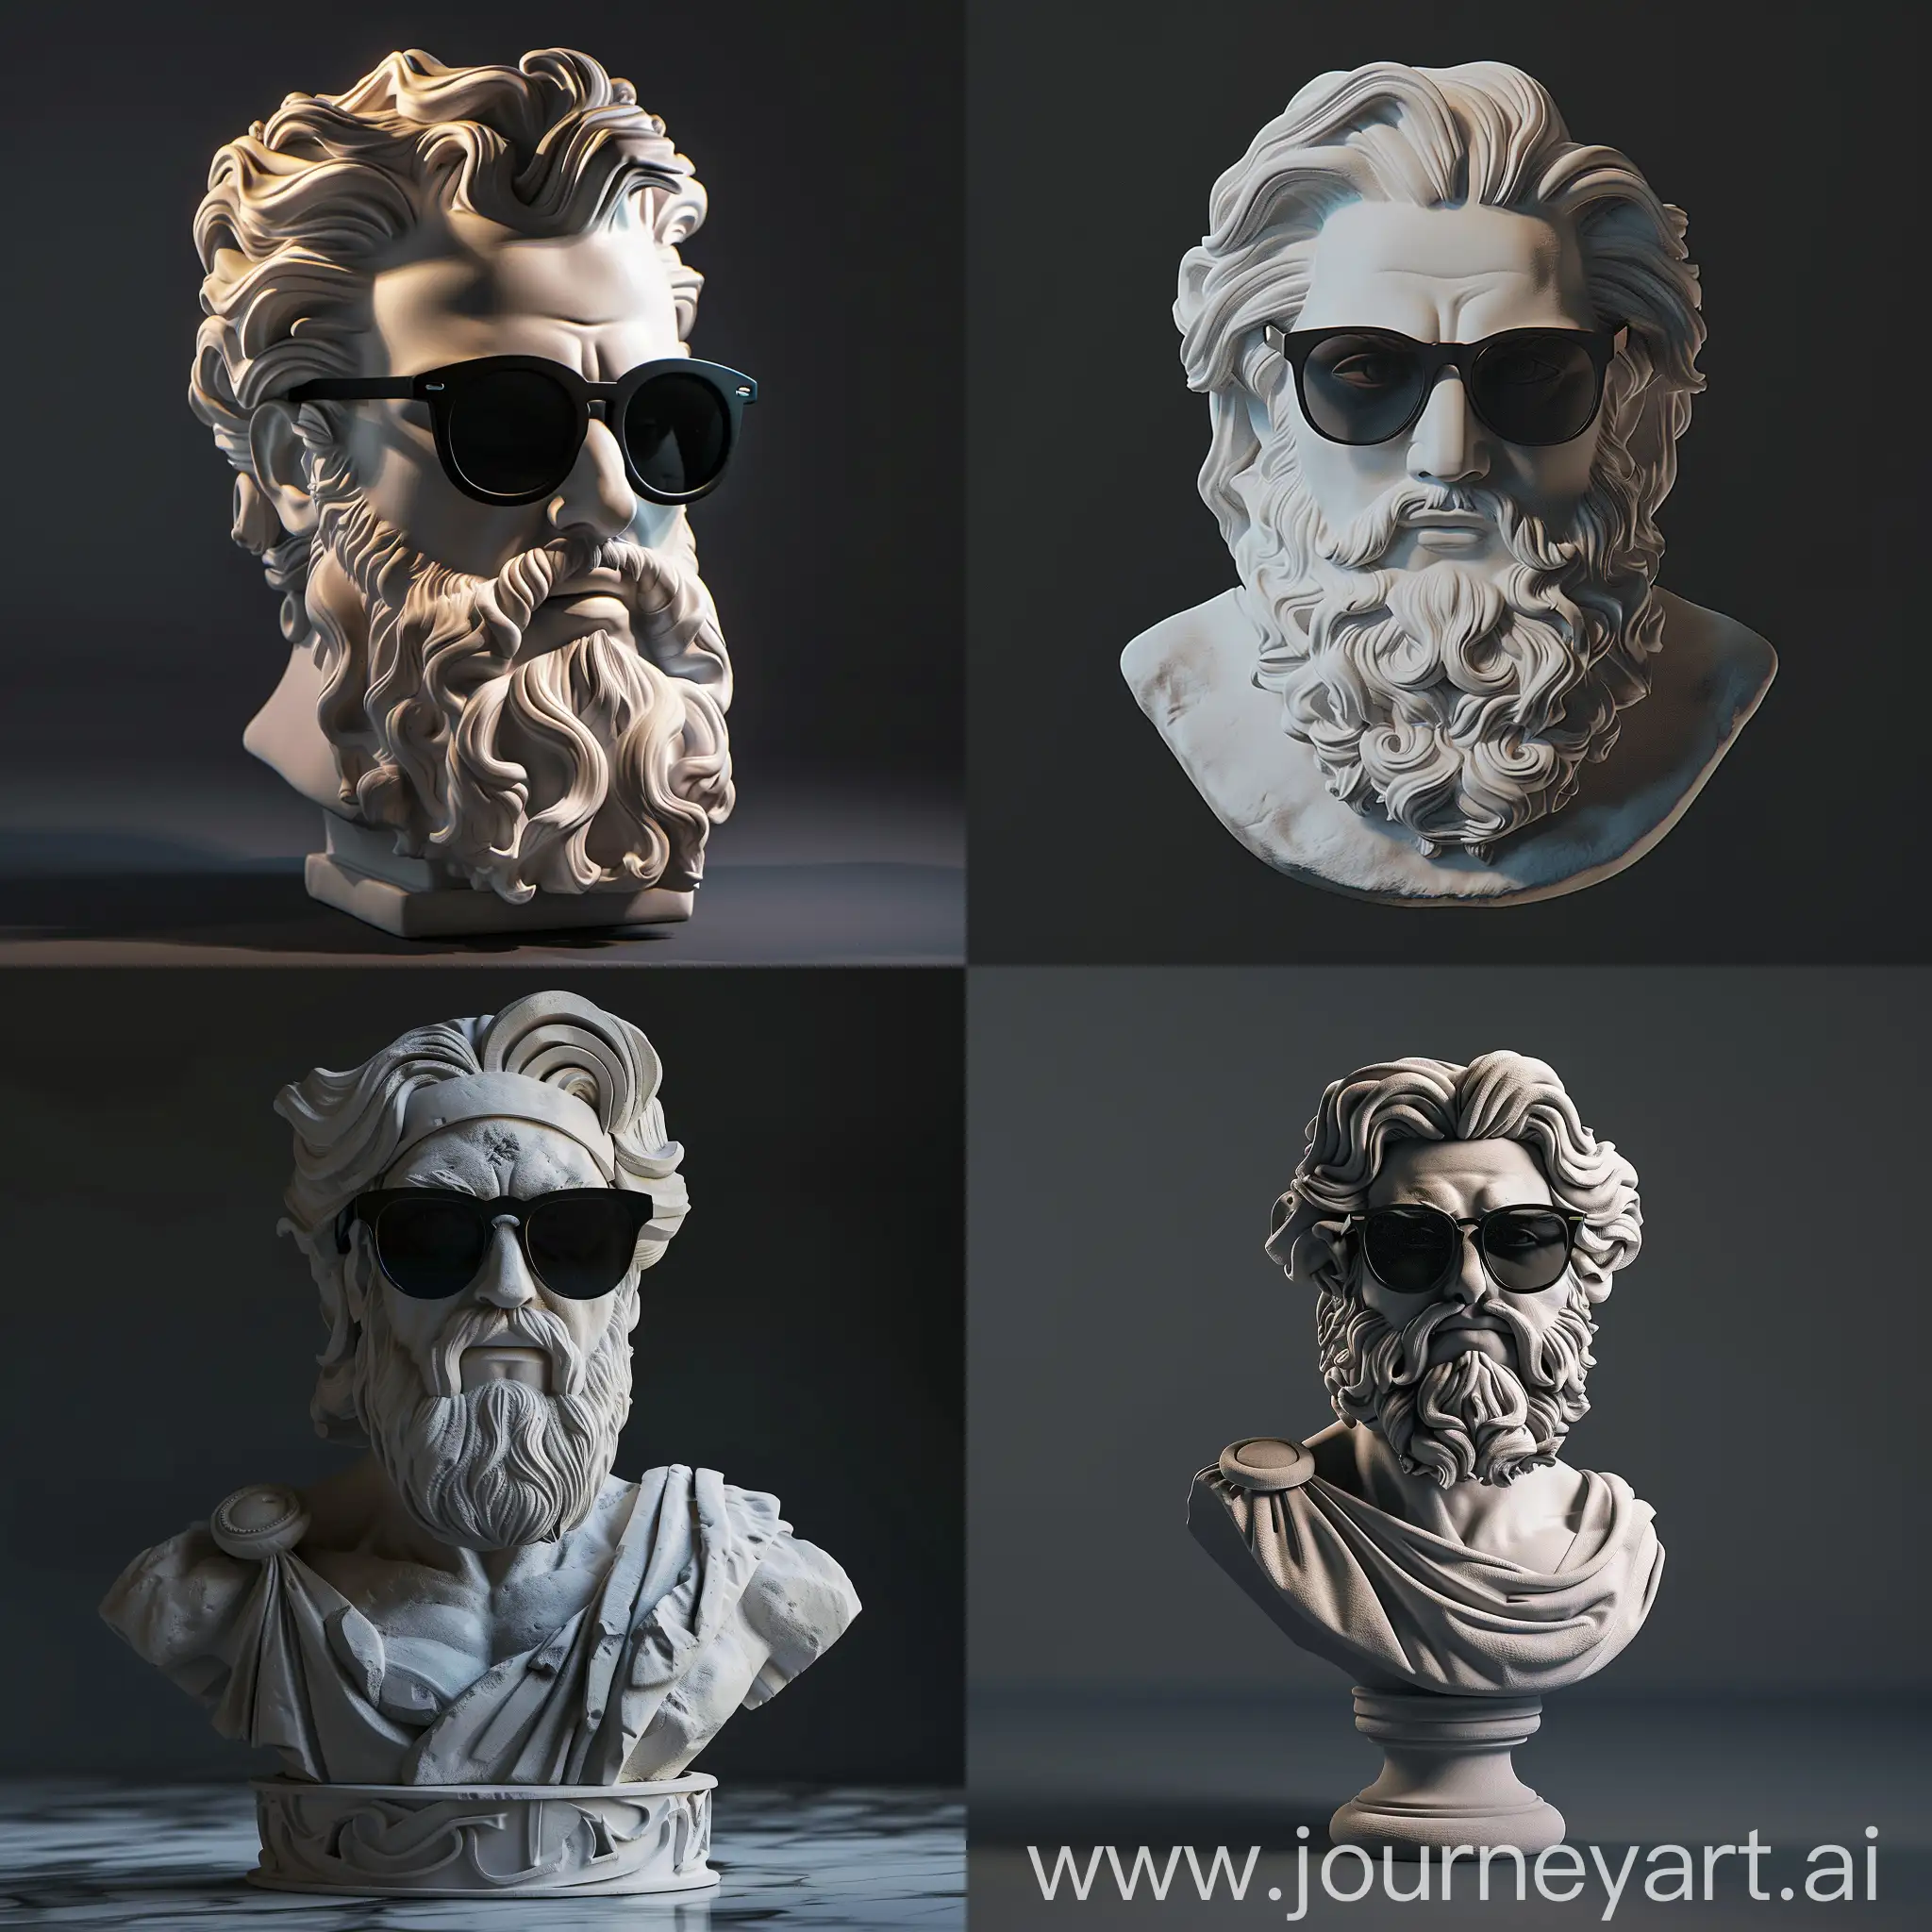 Modern-Zeus-Plaster-Sculpture-with-Sunglasses-on-Dark-Background